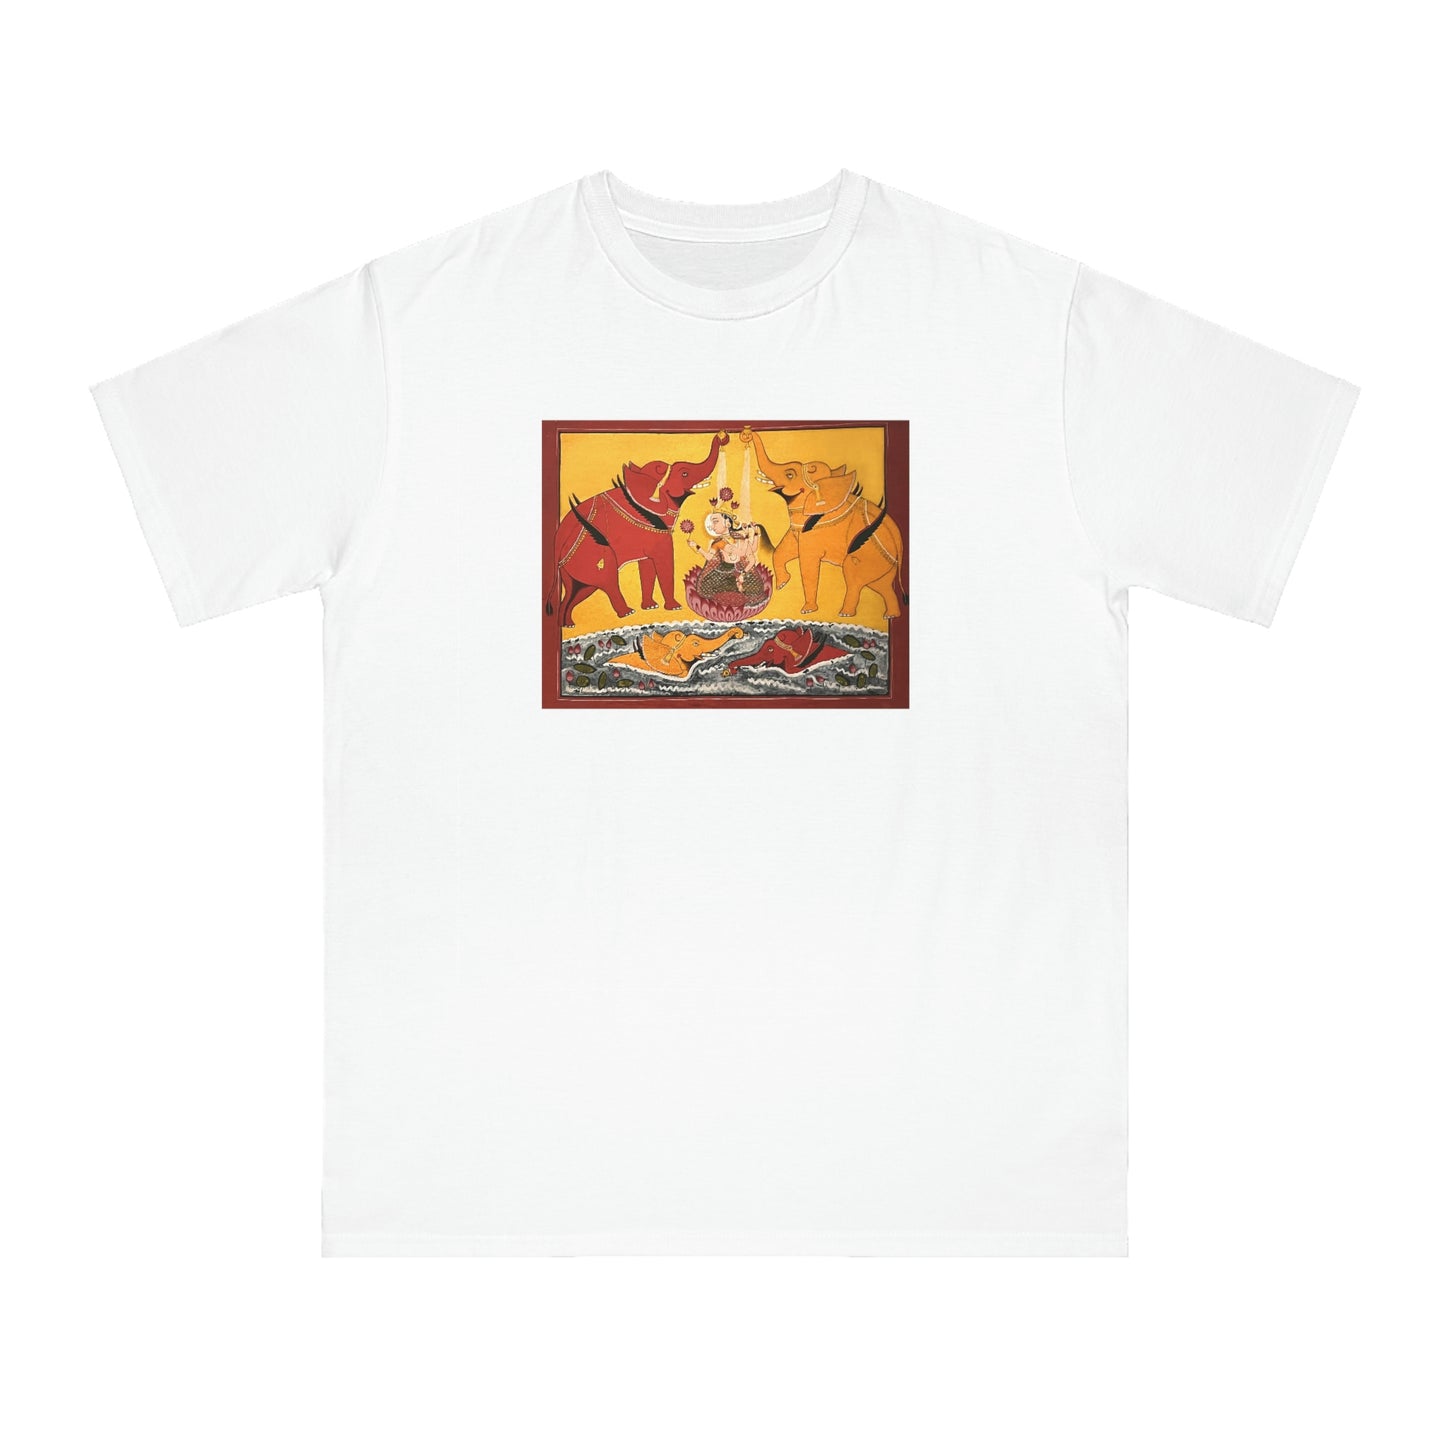 Shri Lakshmi Organic Unisex Classic T-Shirt